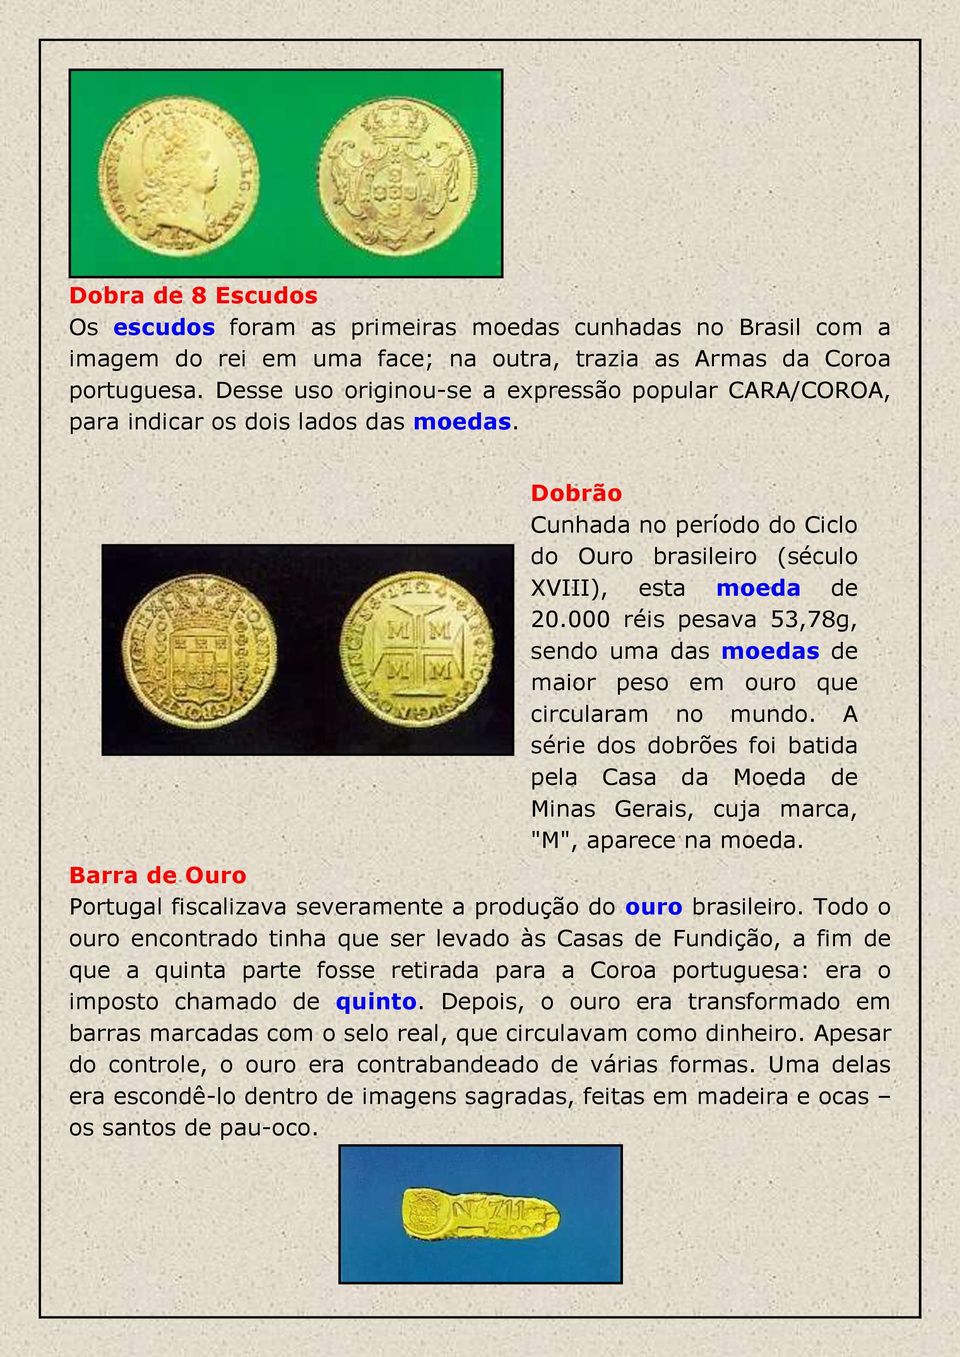 000 réis pesava 53,78g, sendo uma das moedas de maior peso em ouro que circularam no mundo. A série dos dobrões foi batida pela Casa da Moeda de Minas Gerais, cuja marca, "M", aparece na moeda.